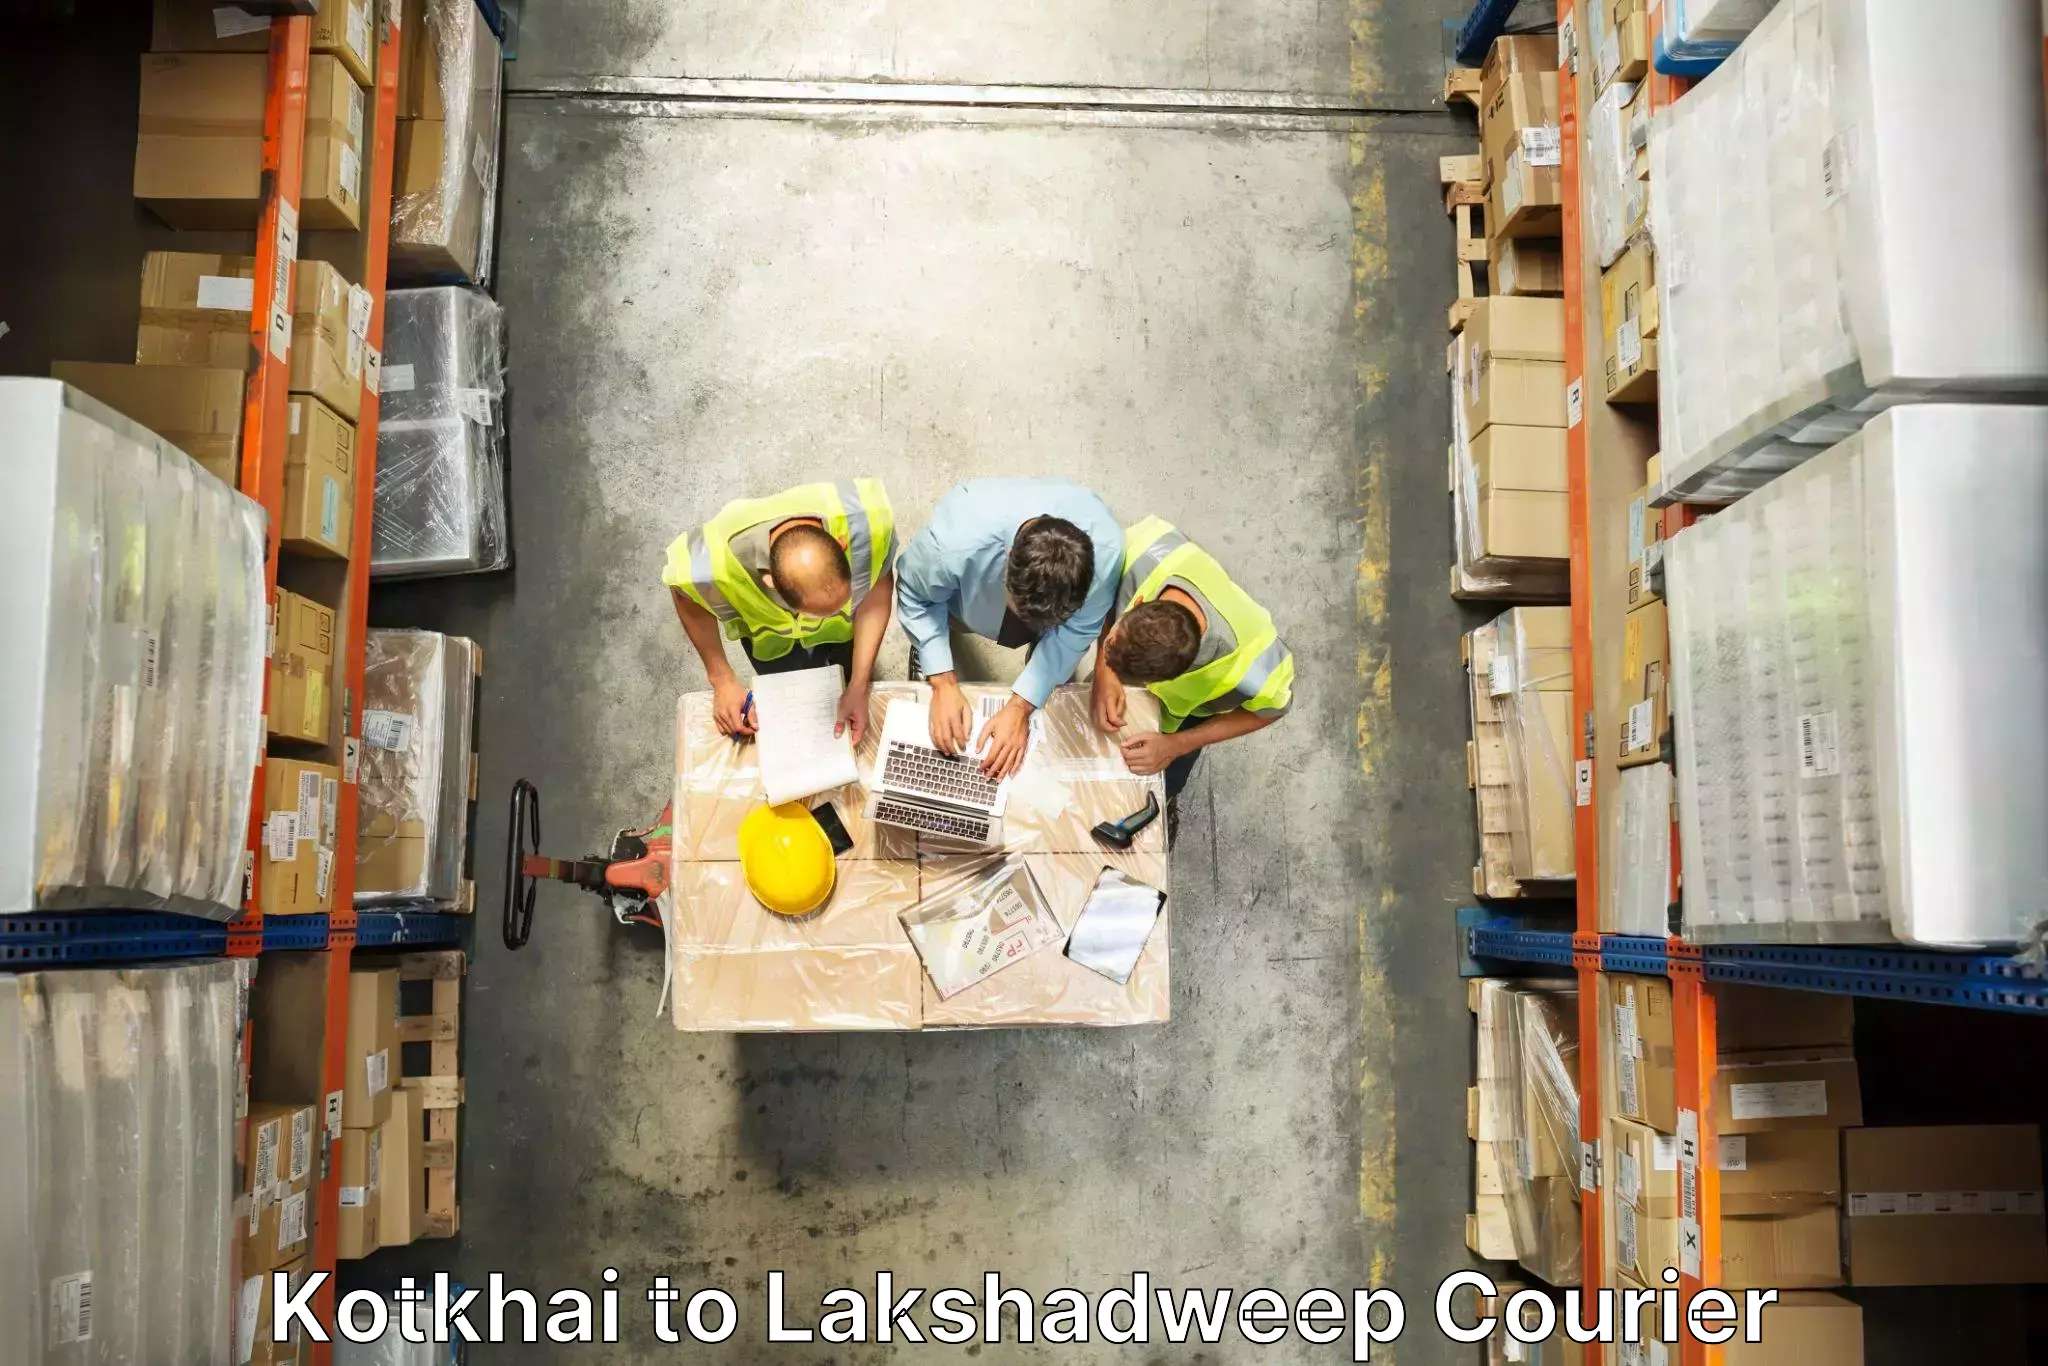 Furniture moving experts Kotkhai to Lakshadweep